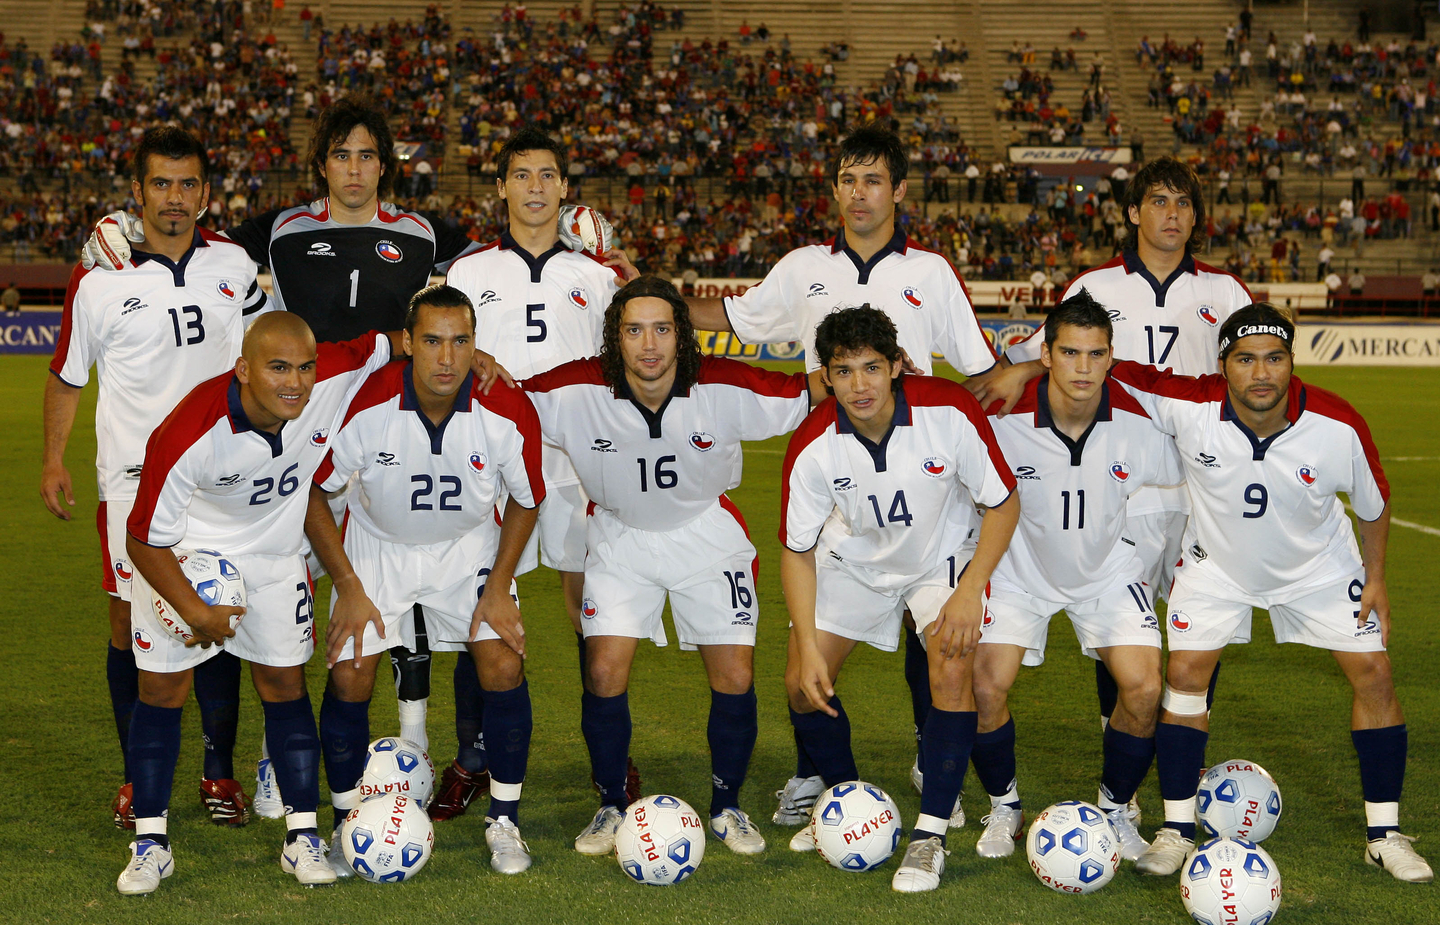 Formación de Chile ante Venezuela, amistoso disputado el 7 de febrero de 2007